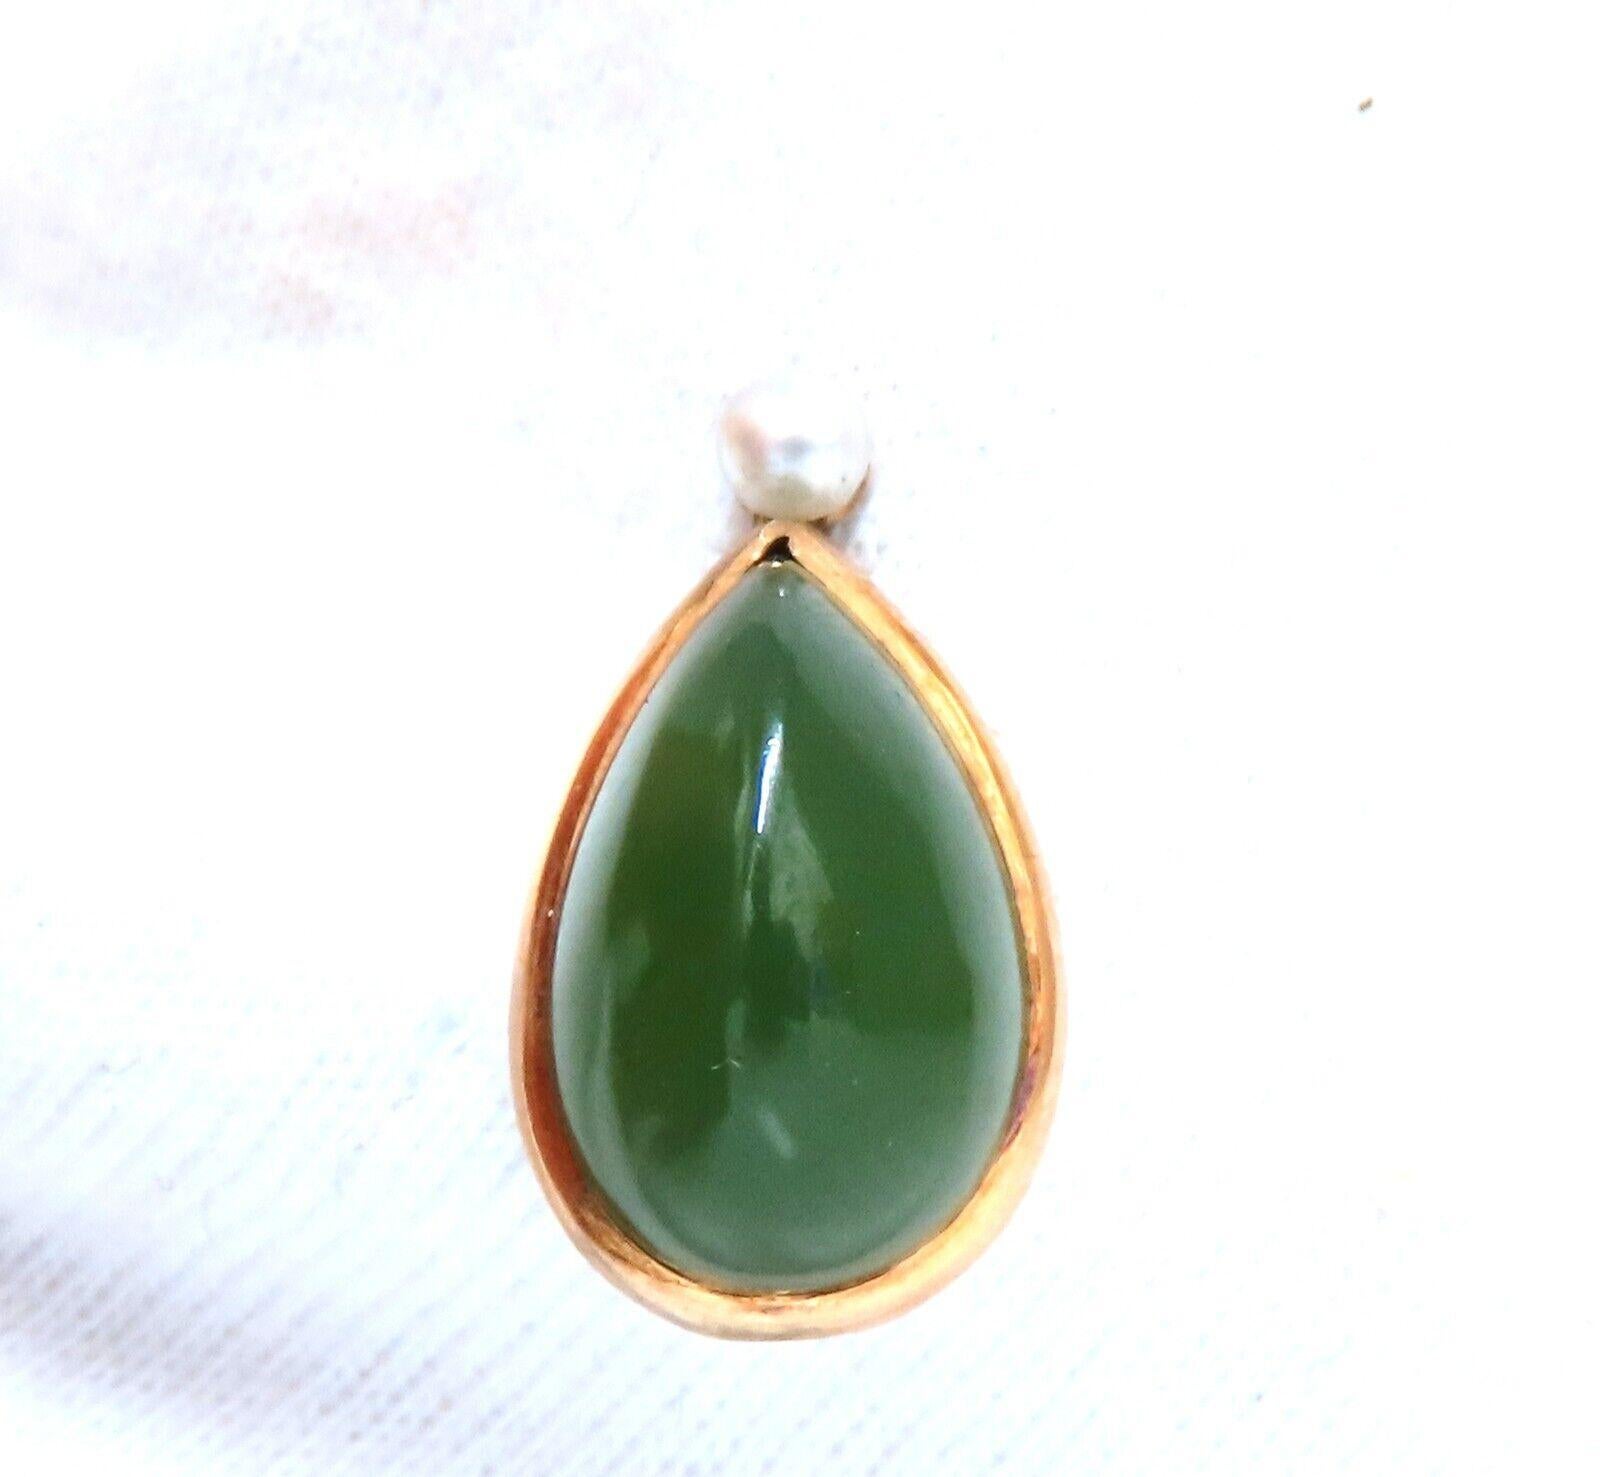 11x7 mm mm Jade américain naturel en forme de poire de 5 carats.

bâton de 68 mm de long

or 14 carats 2 grammes